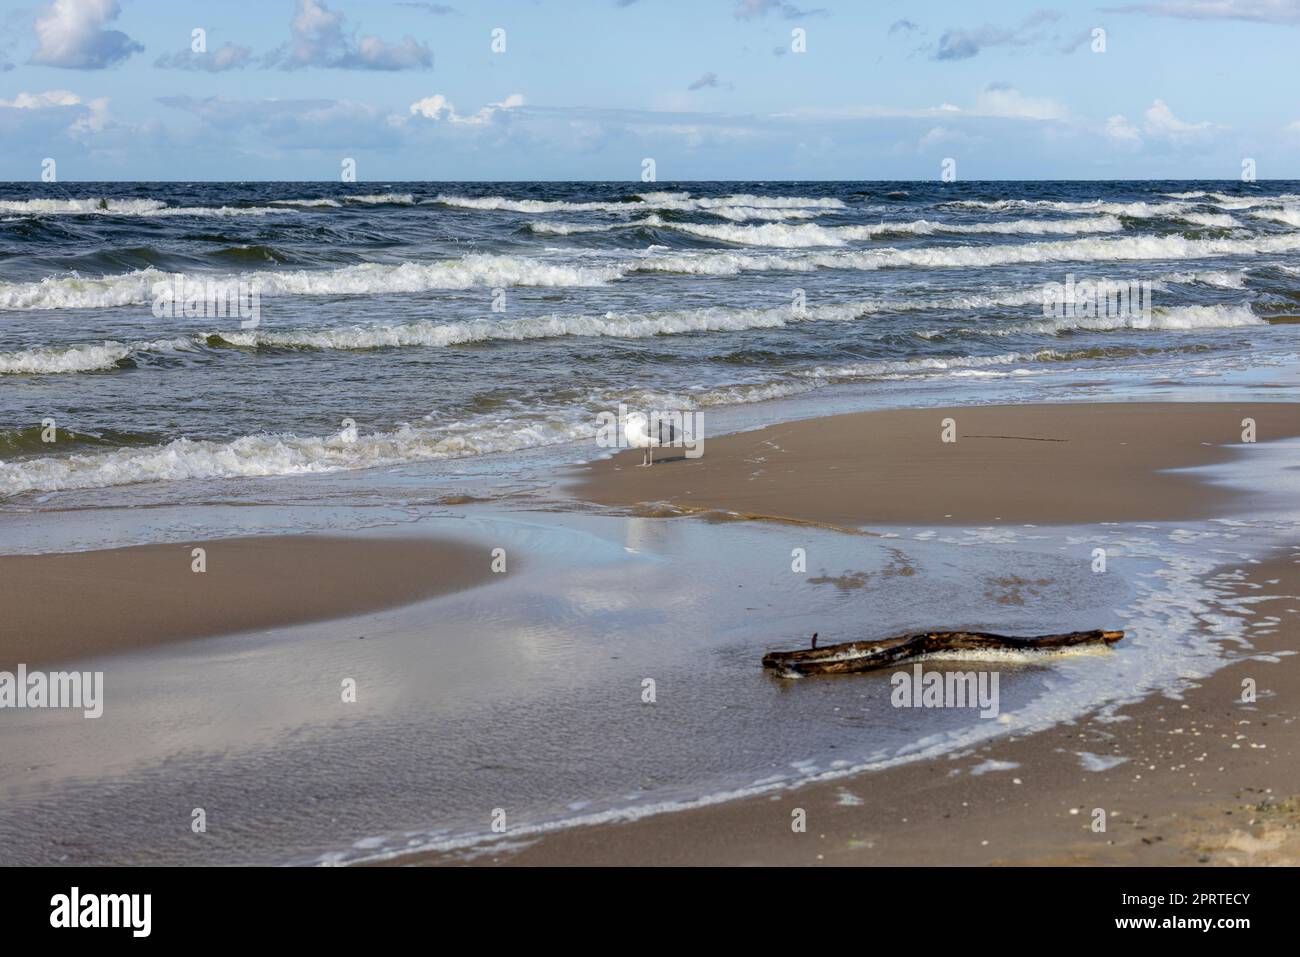 Bellissimo paesaggio sul mare, una spiaggia vuota, le acque schiumose del Mar Baltico, gabbiani che camminano sulla sabbia, Wyspa Wolin, Miedzyzdroje, Polonia Foto Stock